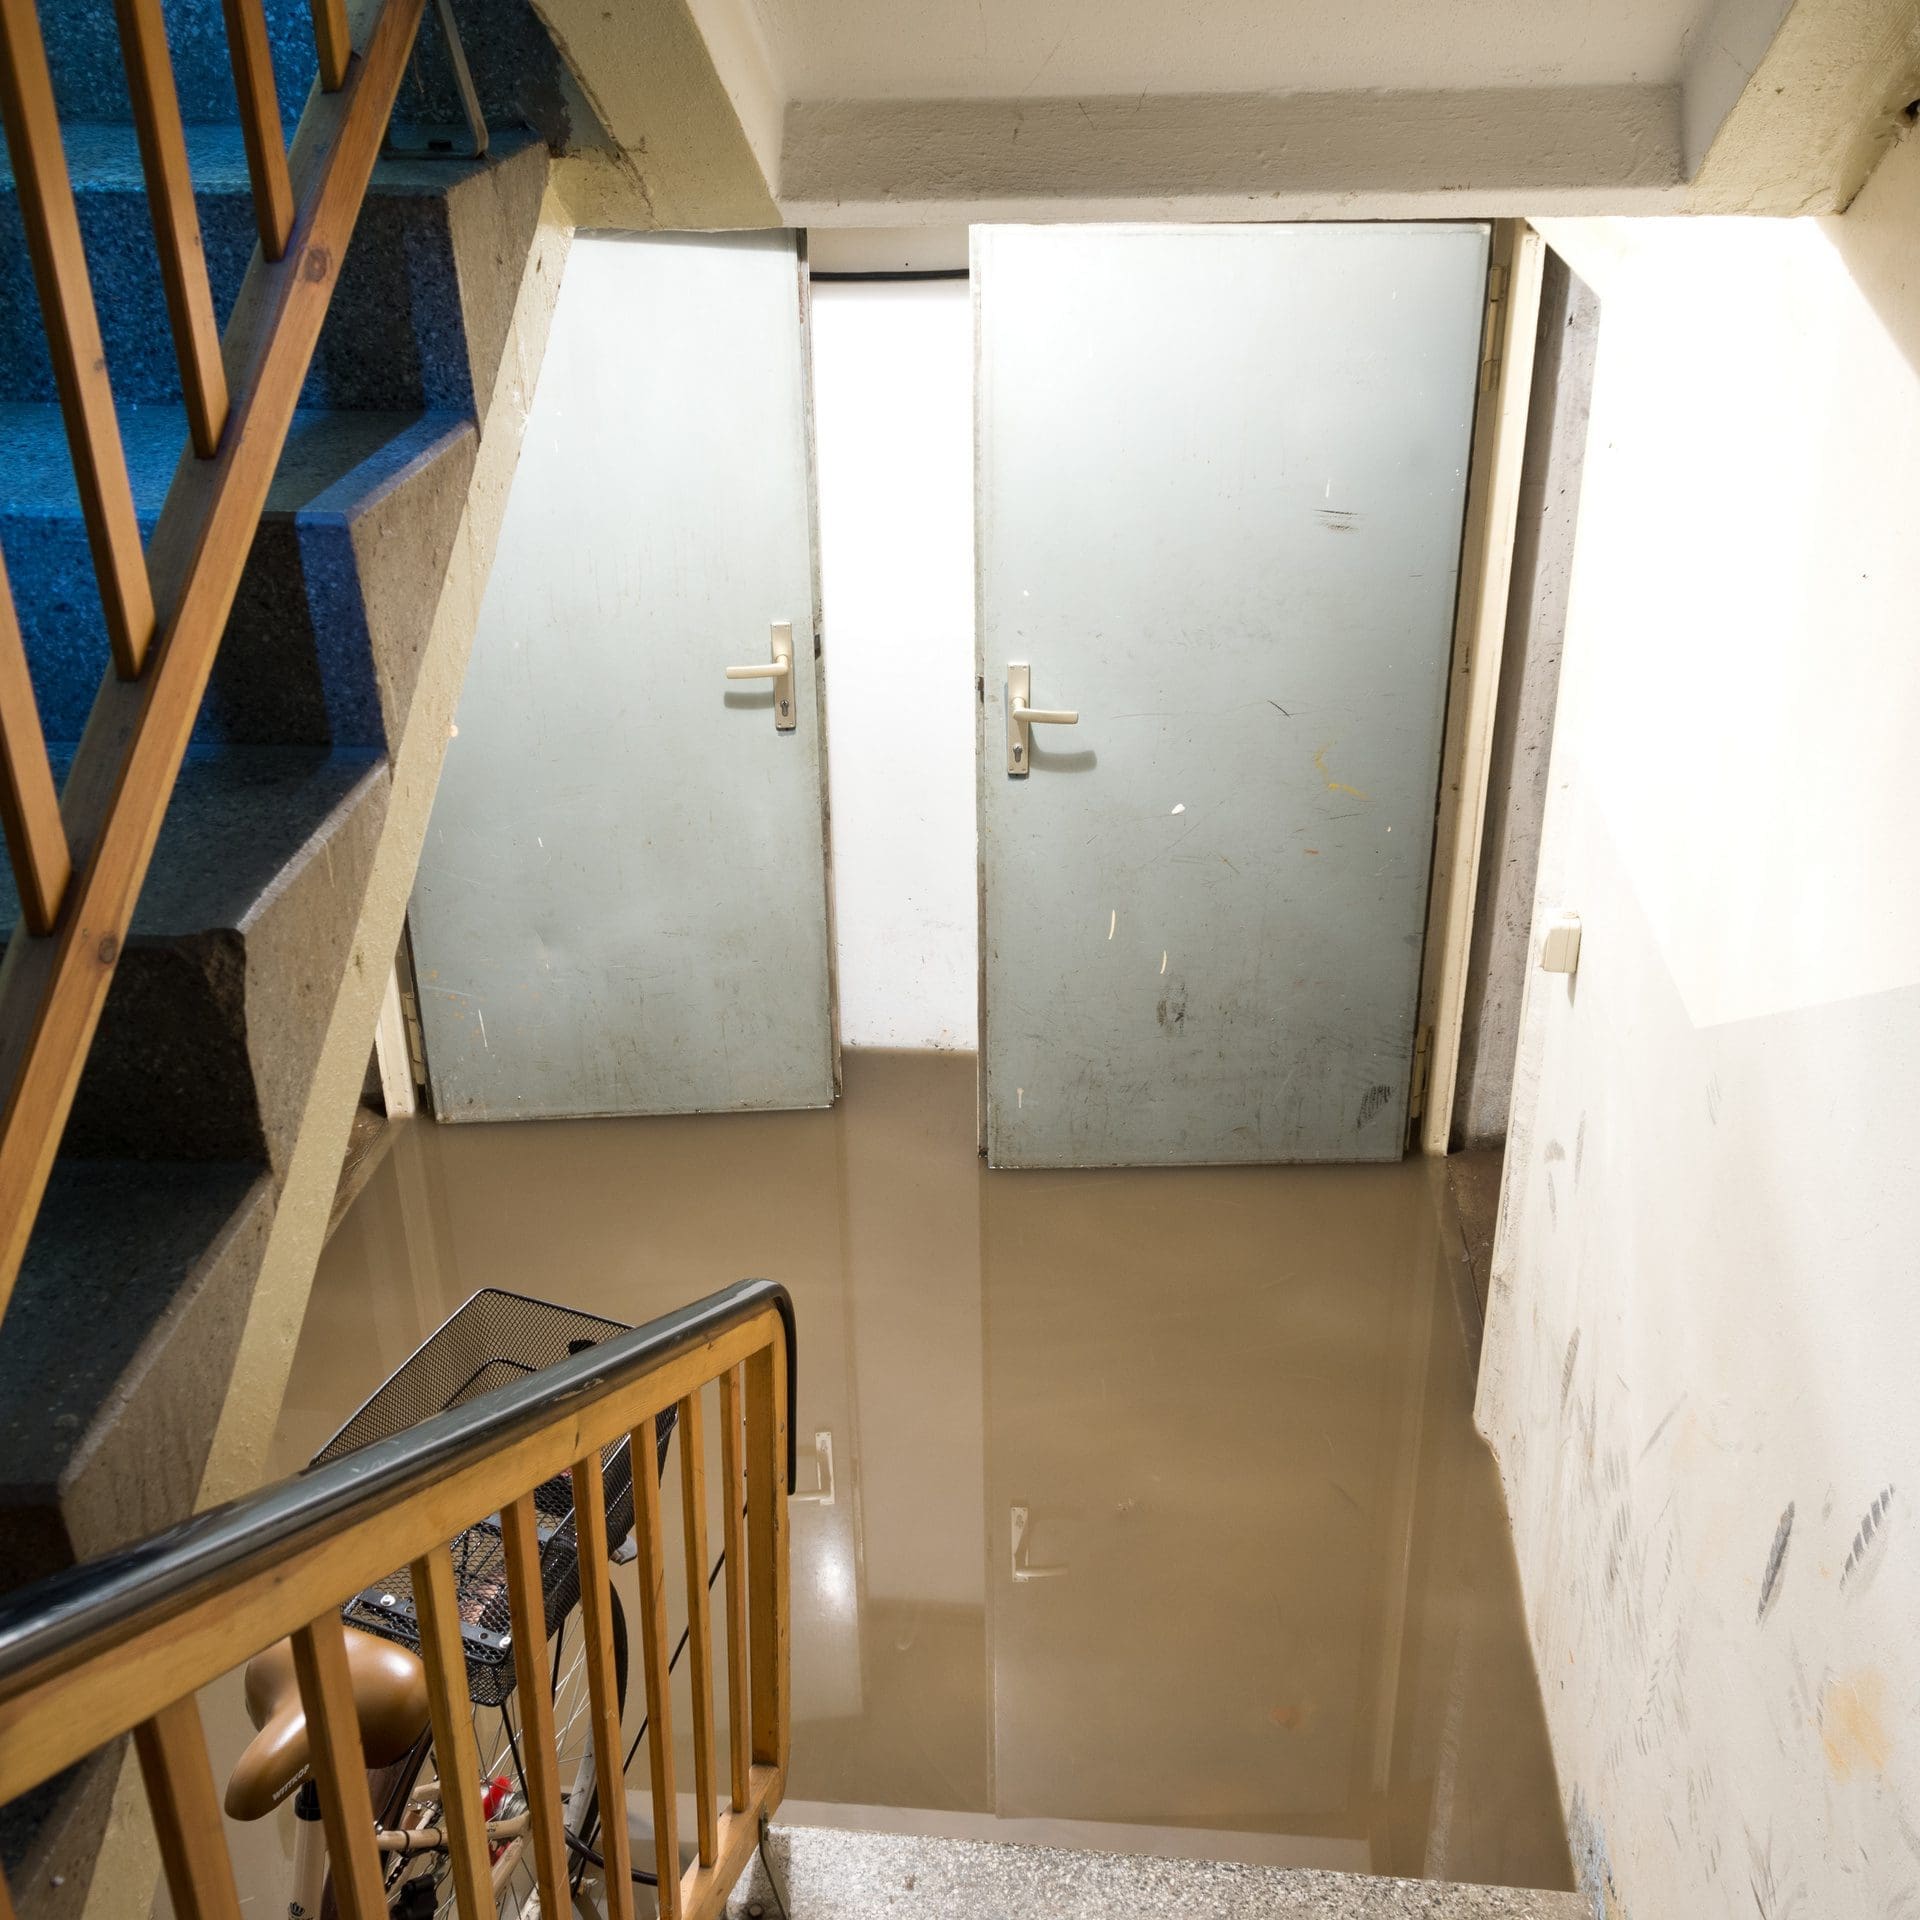 Wassereinbruch im Keller eines Hauses (© Stephanie Eichler / stock.adobe.com)